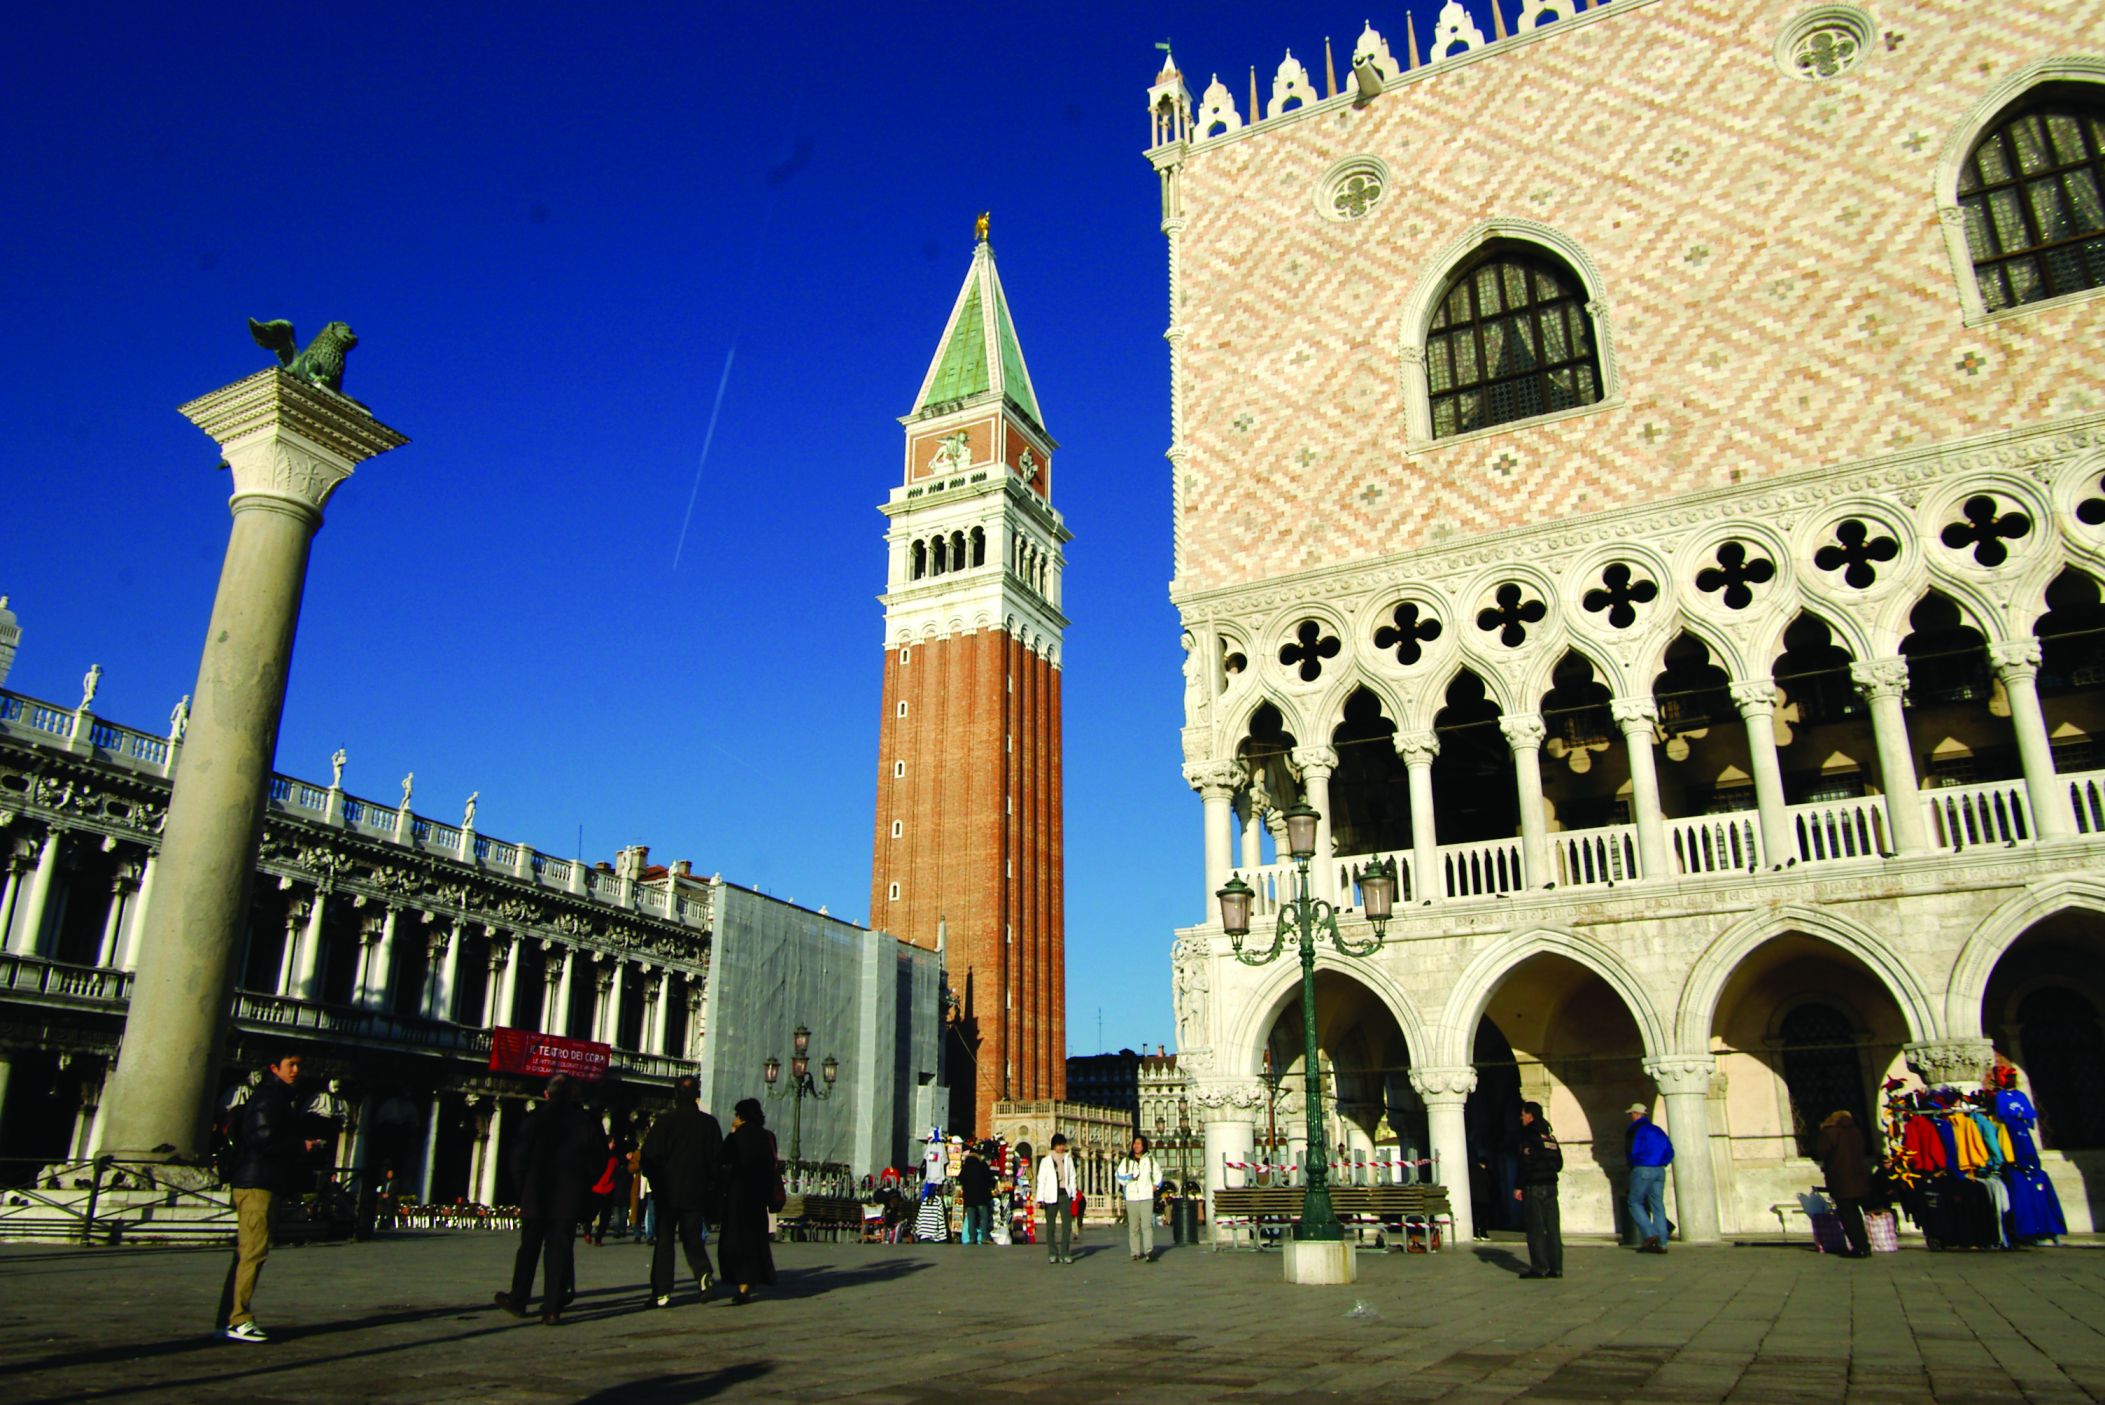 Le campanile di San Marco et le Palazzo Ducale (palais des Doges).